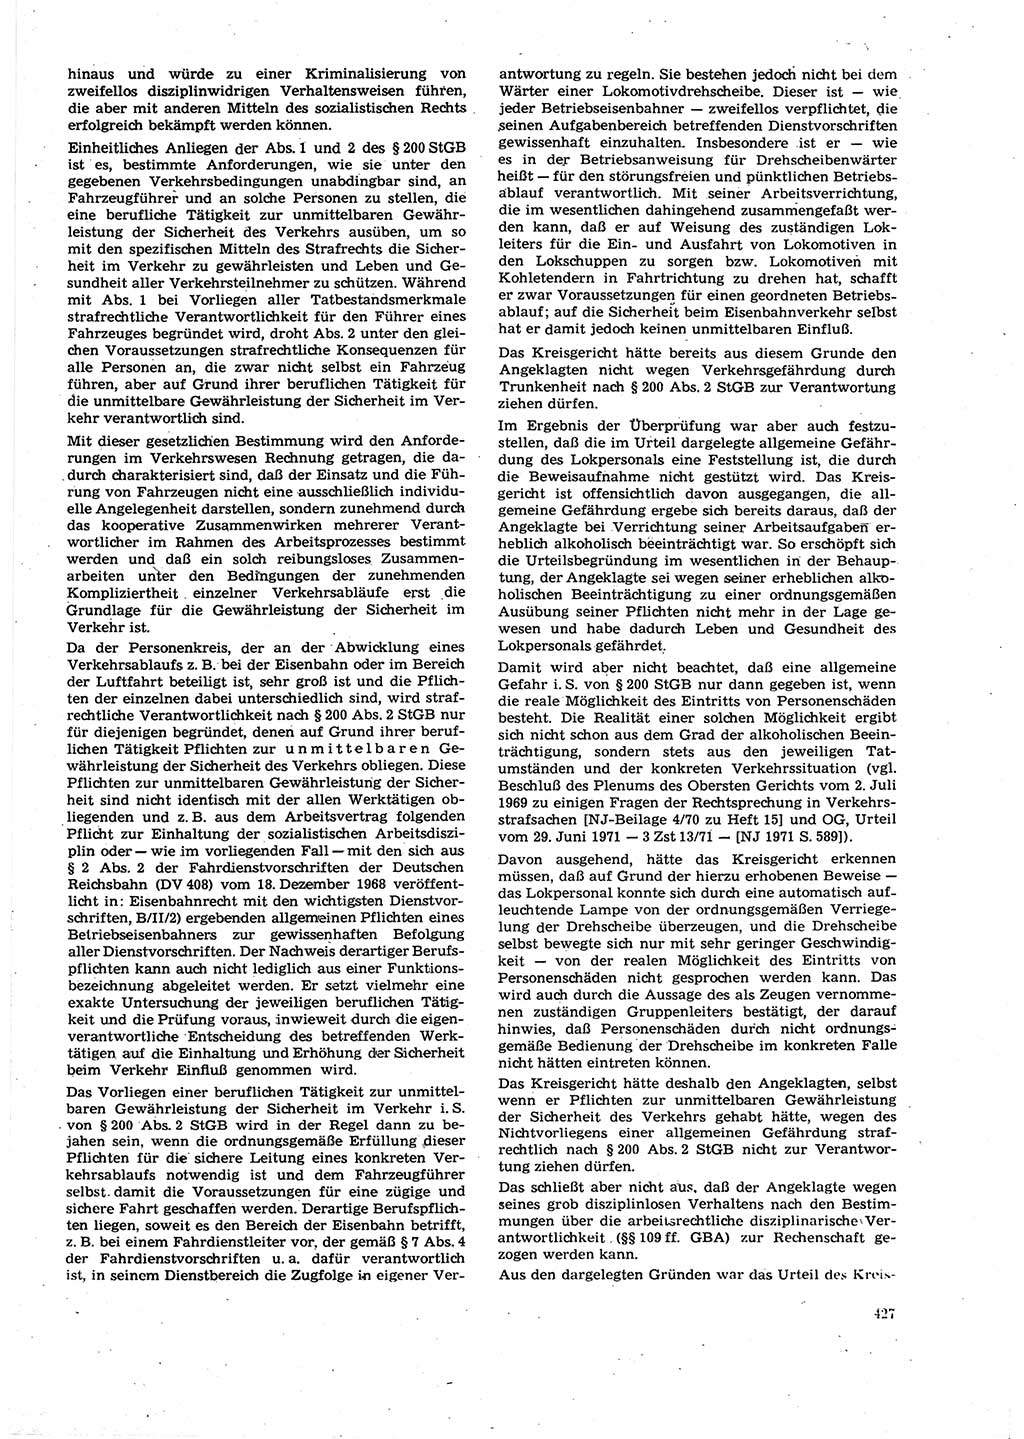 Neue Justiz (NJ), Zeitschrift für Recht und Rechtswissenschaft [Deutsche Demokratische Republik (DDR)], 27. Jahrgang 1973, Seite 427 (NJ DDR 1973, S. 427)